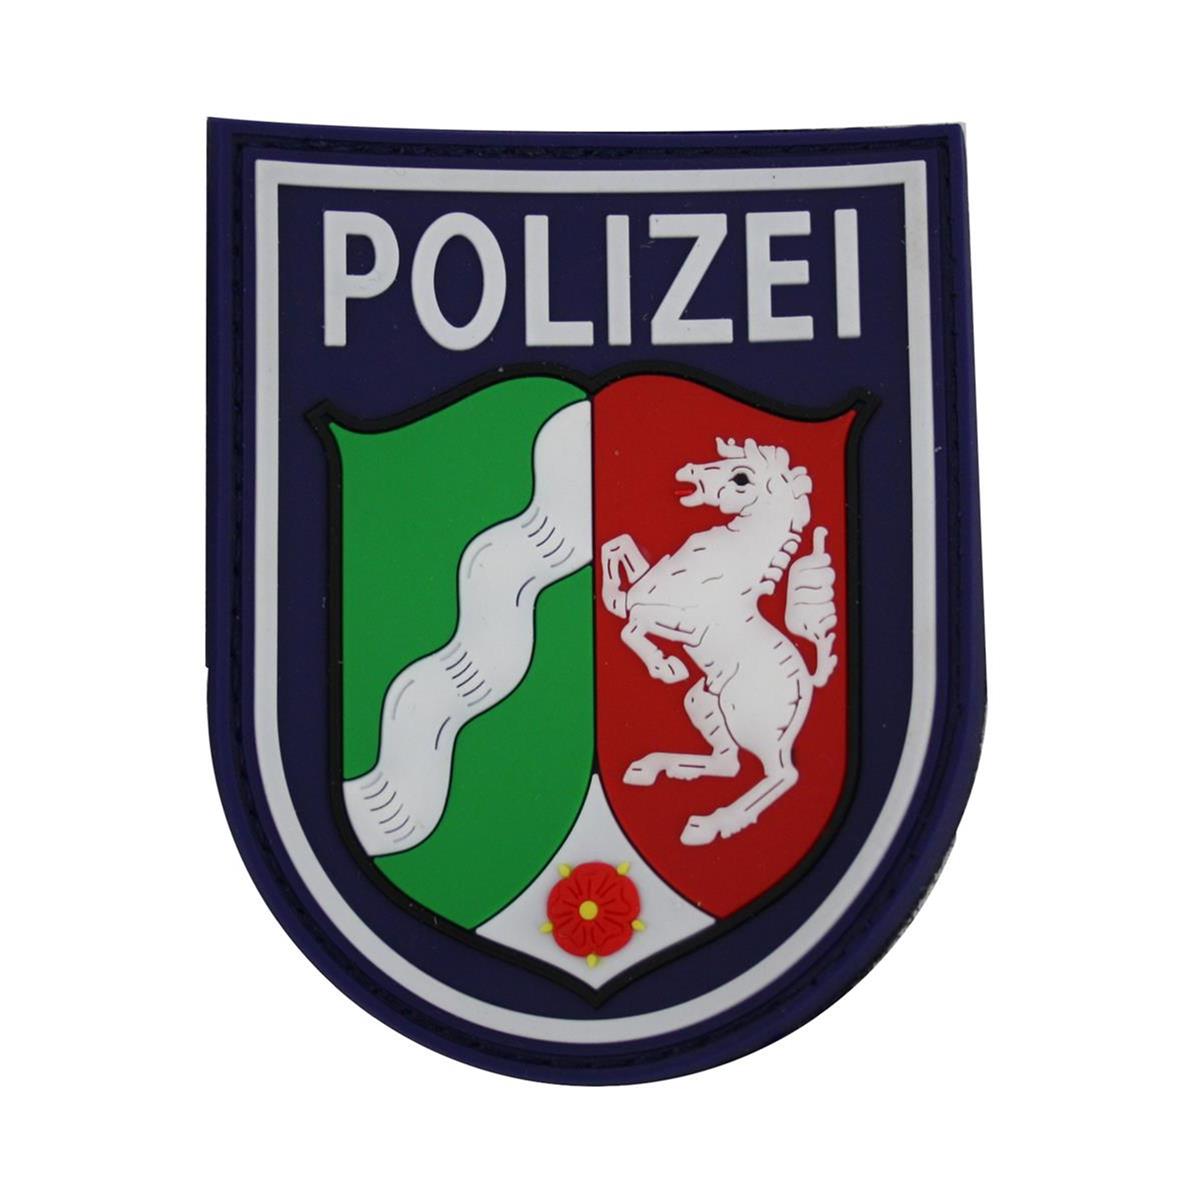 Polizei Diensthundführer SUNDERN Nordrhein-Westfalen K-9 DHF Abzeichen Patch NRW 